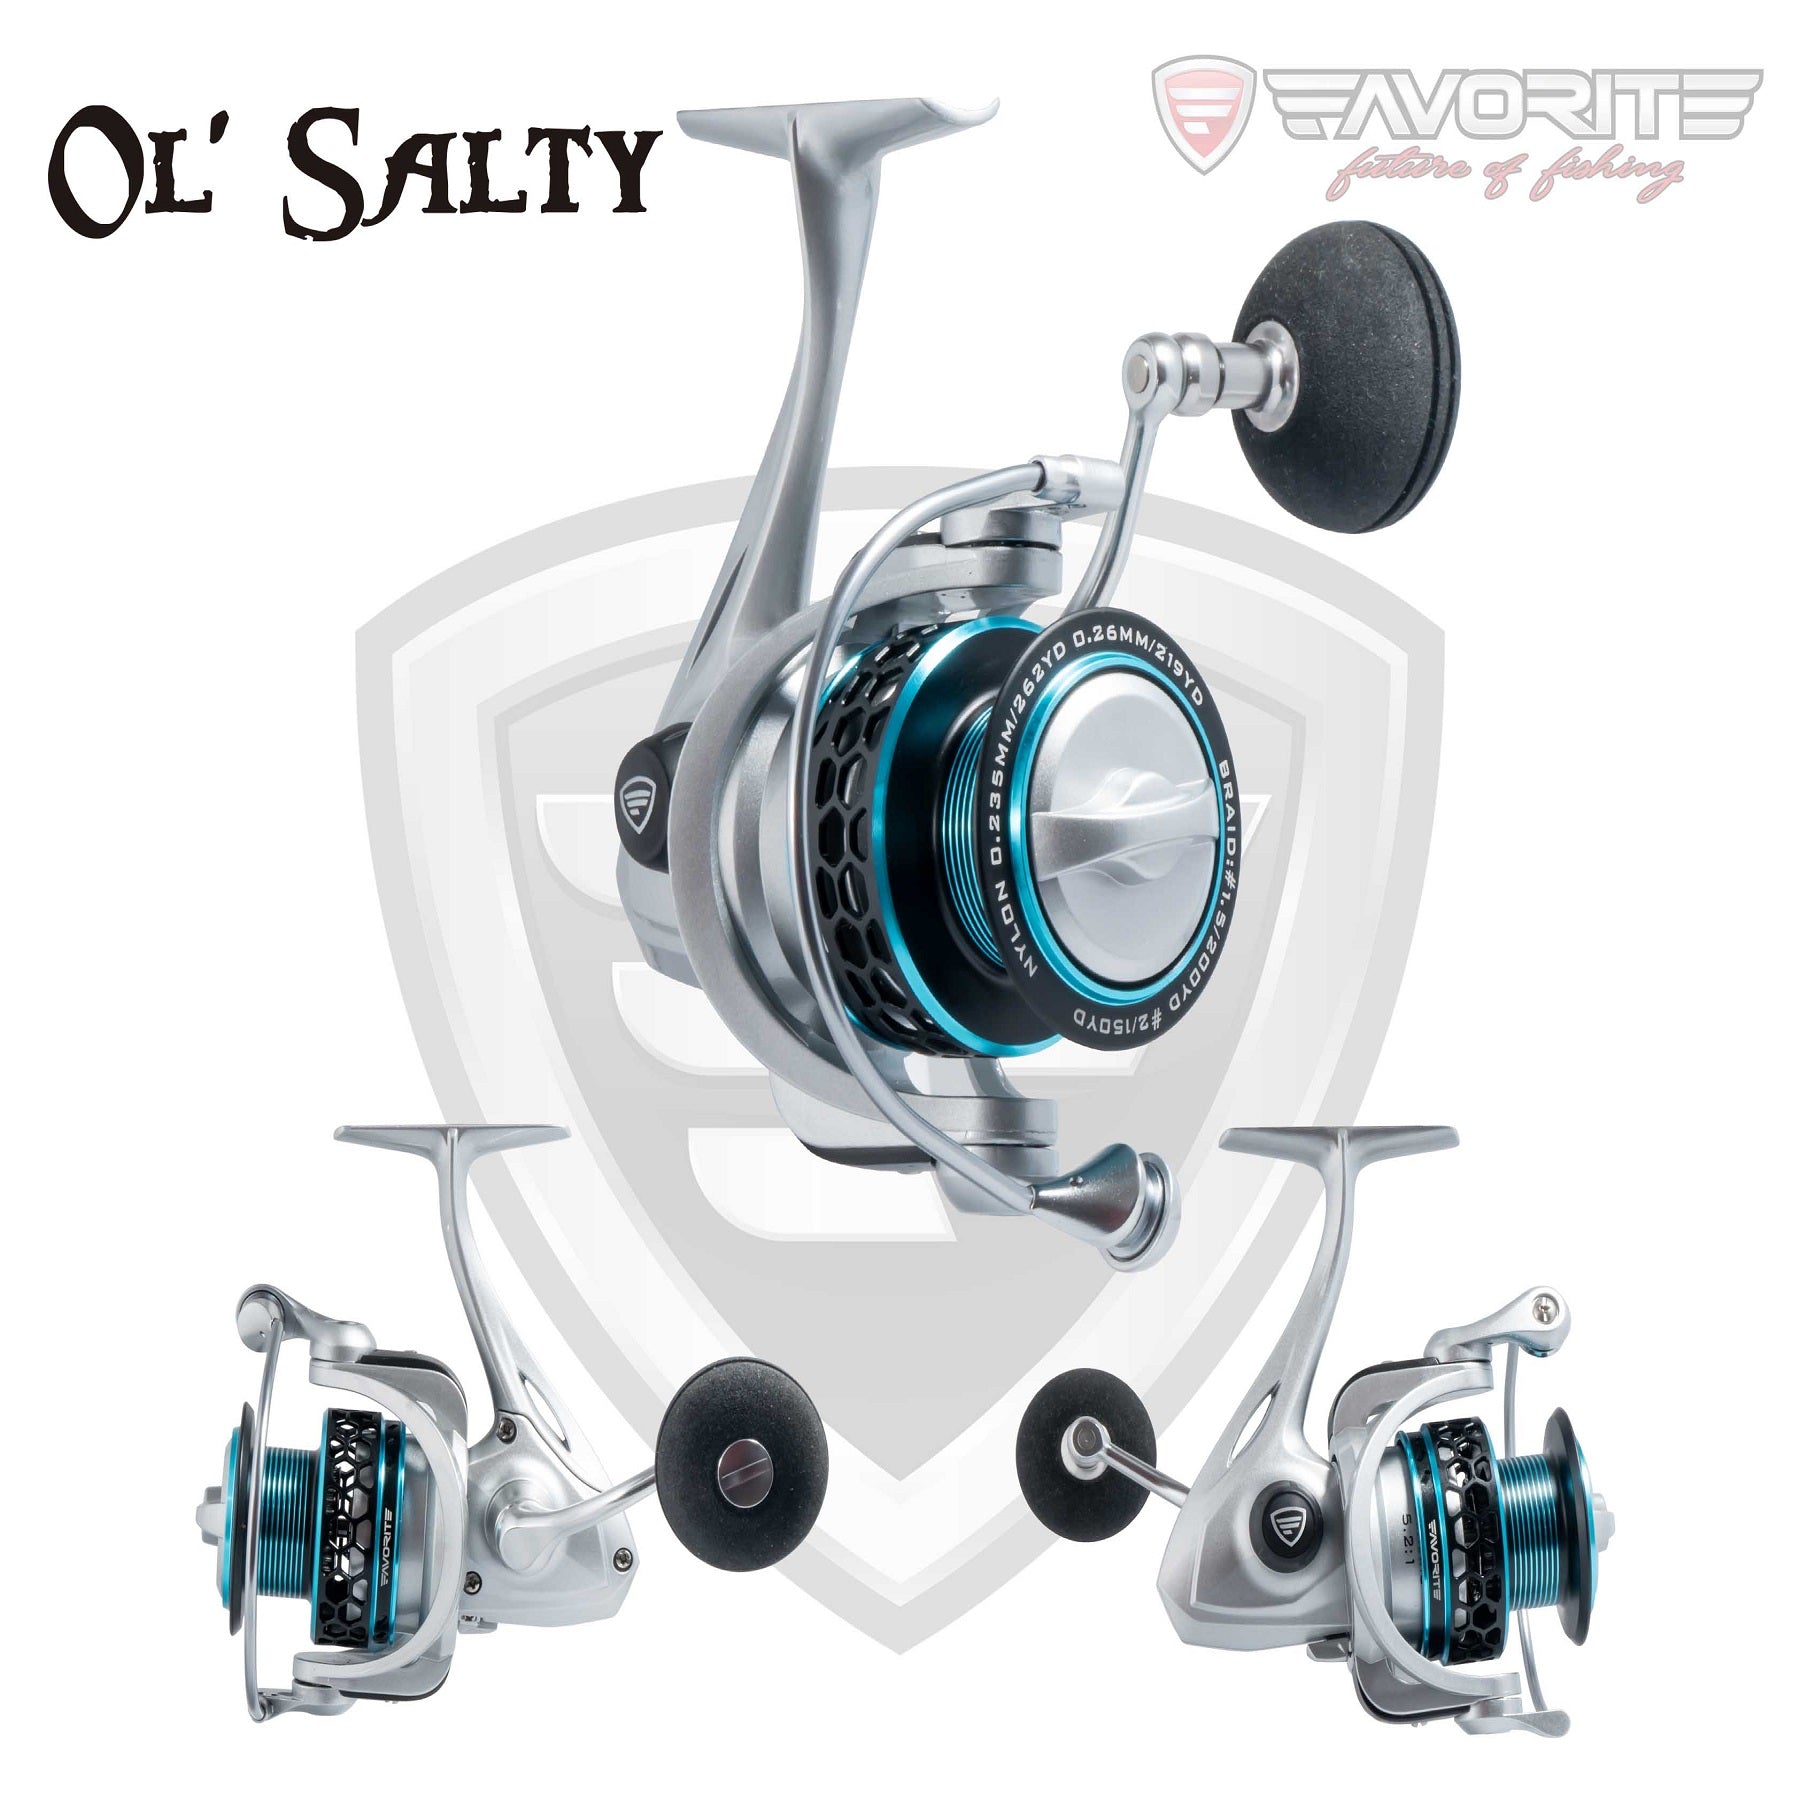 Favorite OLS5000 Ol' Salty Spinning Reel 8 + 1 Bb Sz 5000